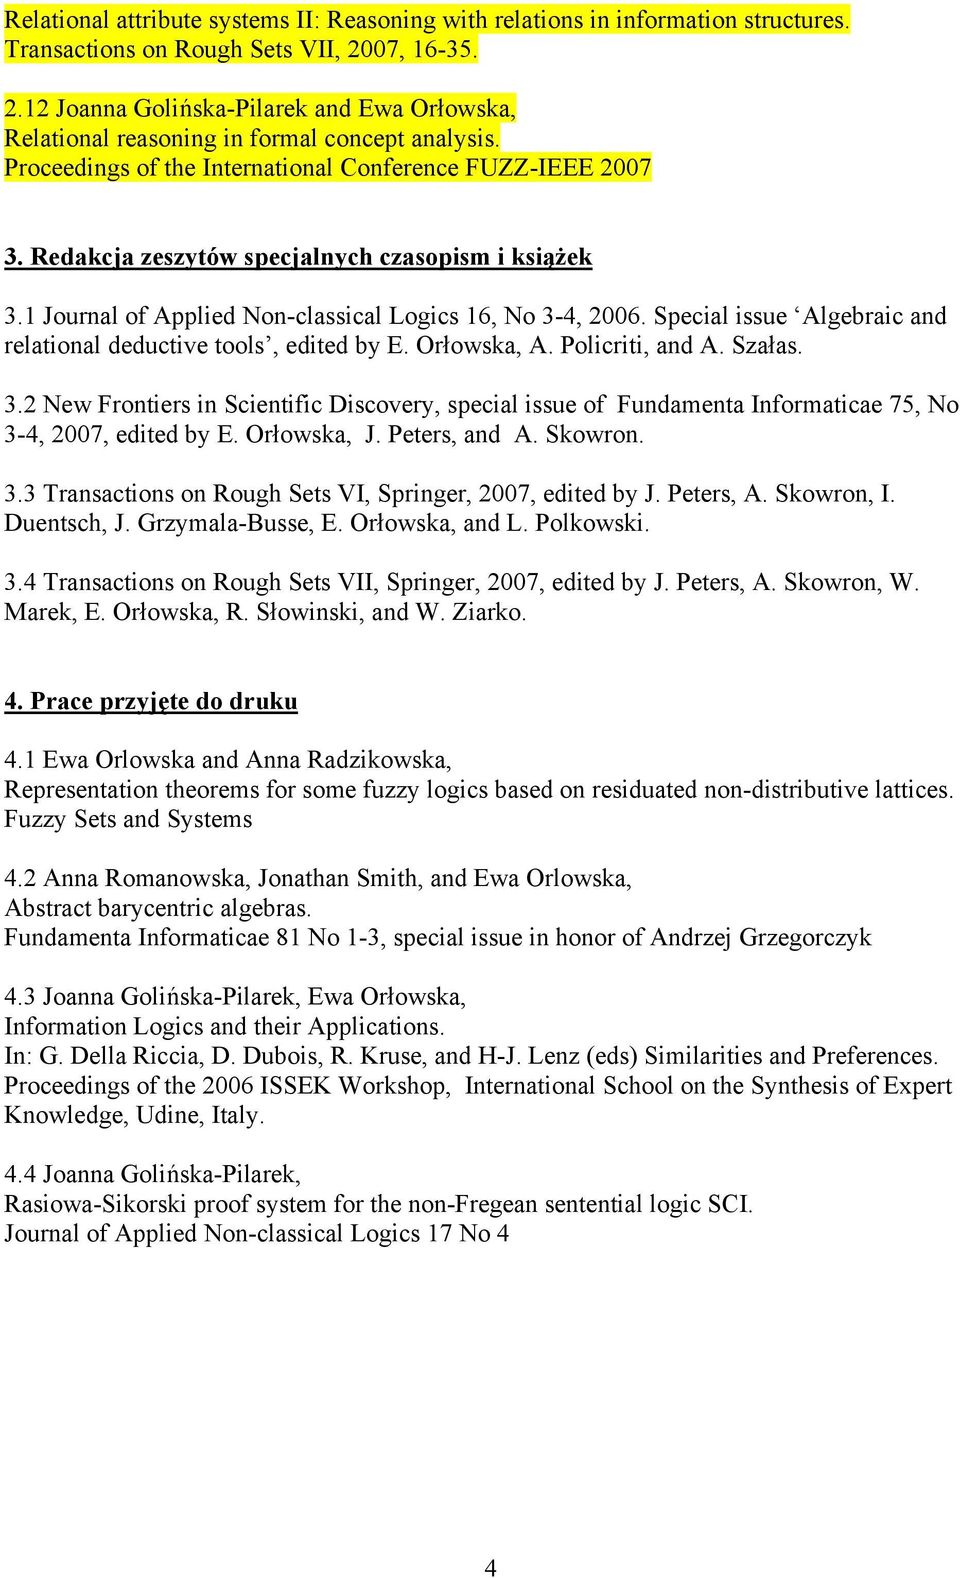 Redakcja zeszytów specjalnych czasopism i książek 3.1 Journal of Applied Non-classical Logics 16, No 3-4, 2006. Special issue Algebraic and relational deductive tools, edited by E. Orłowska, A.